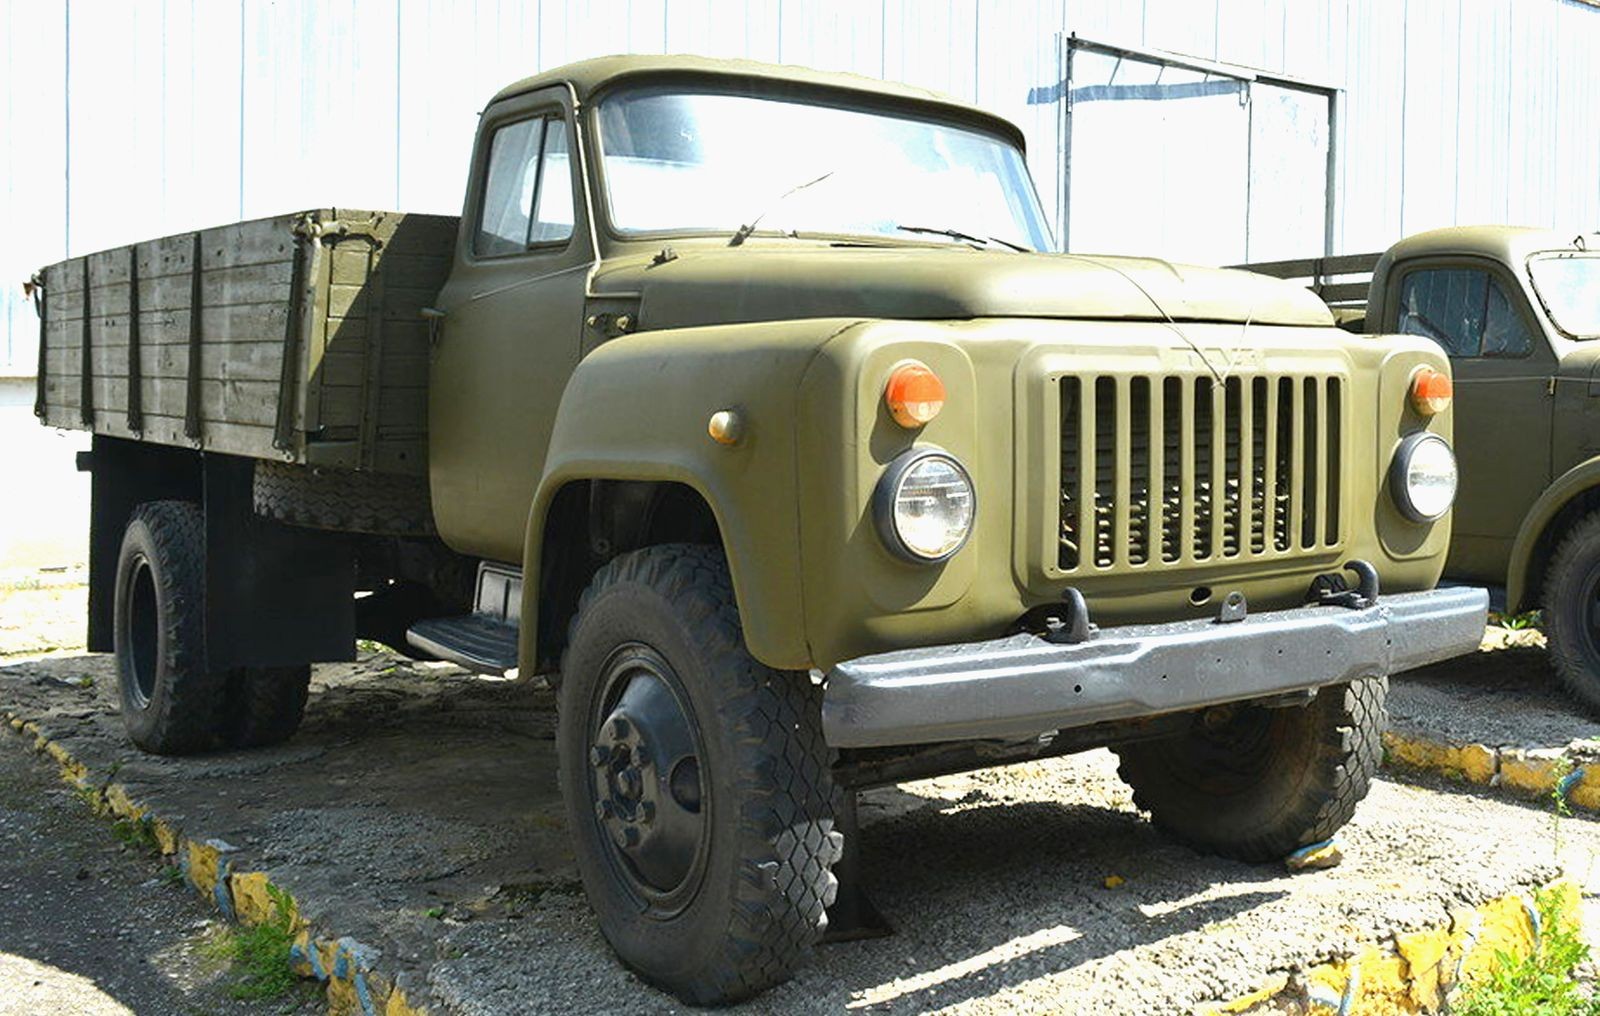 ГАЗ-3301, ЗИЛ-4334, МАЗ-6317 и другие: малоизвестные военные грузовики позднего СССР